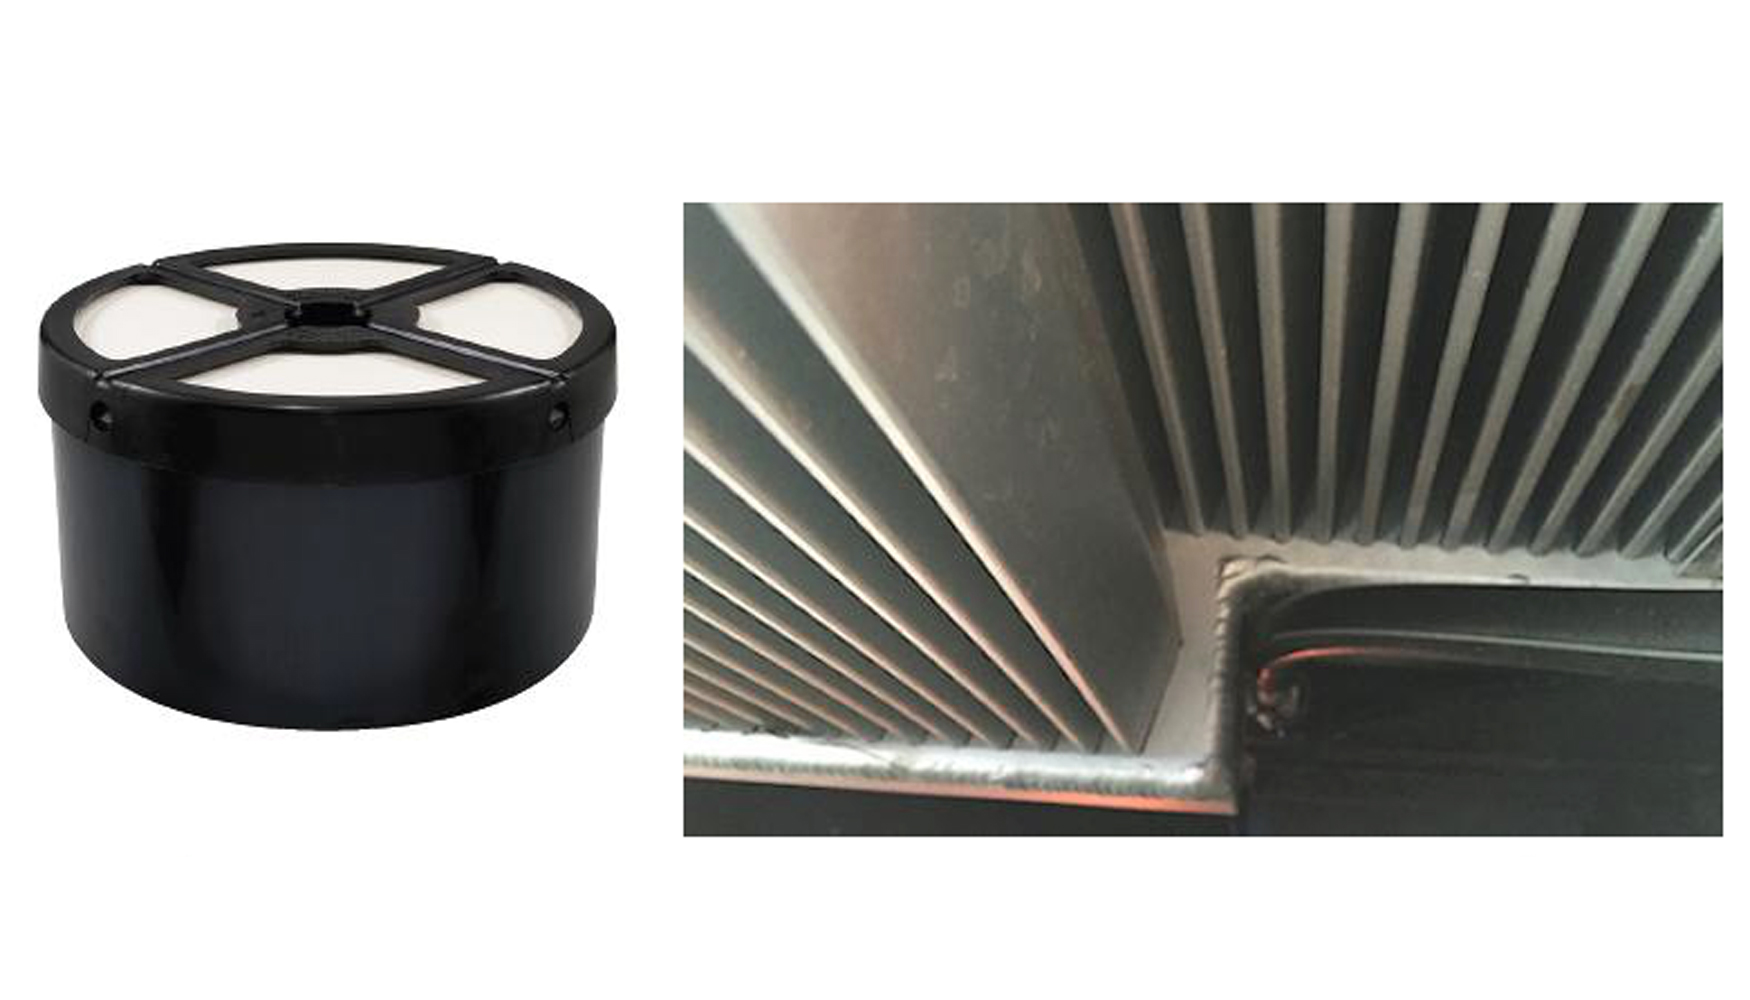 De izquierda a derecha: Filtro de Baldwin Filter de la gama Hidrulica y tecnologa finless (sin aletas) desarrollada por GM Radiador...